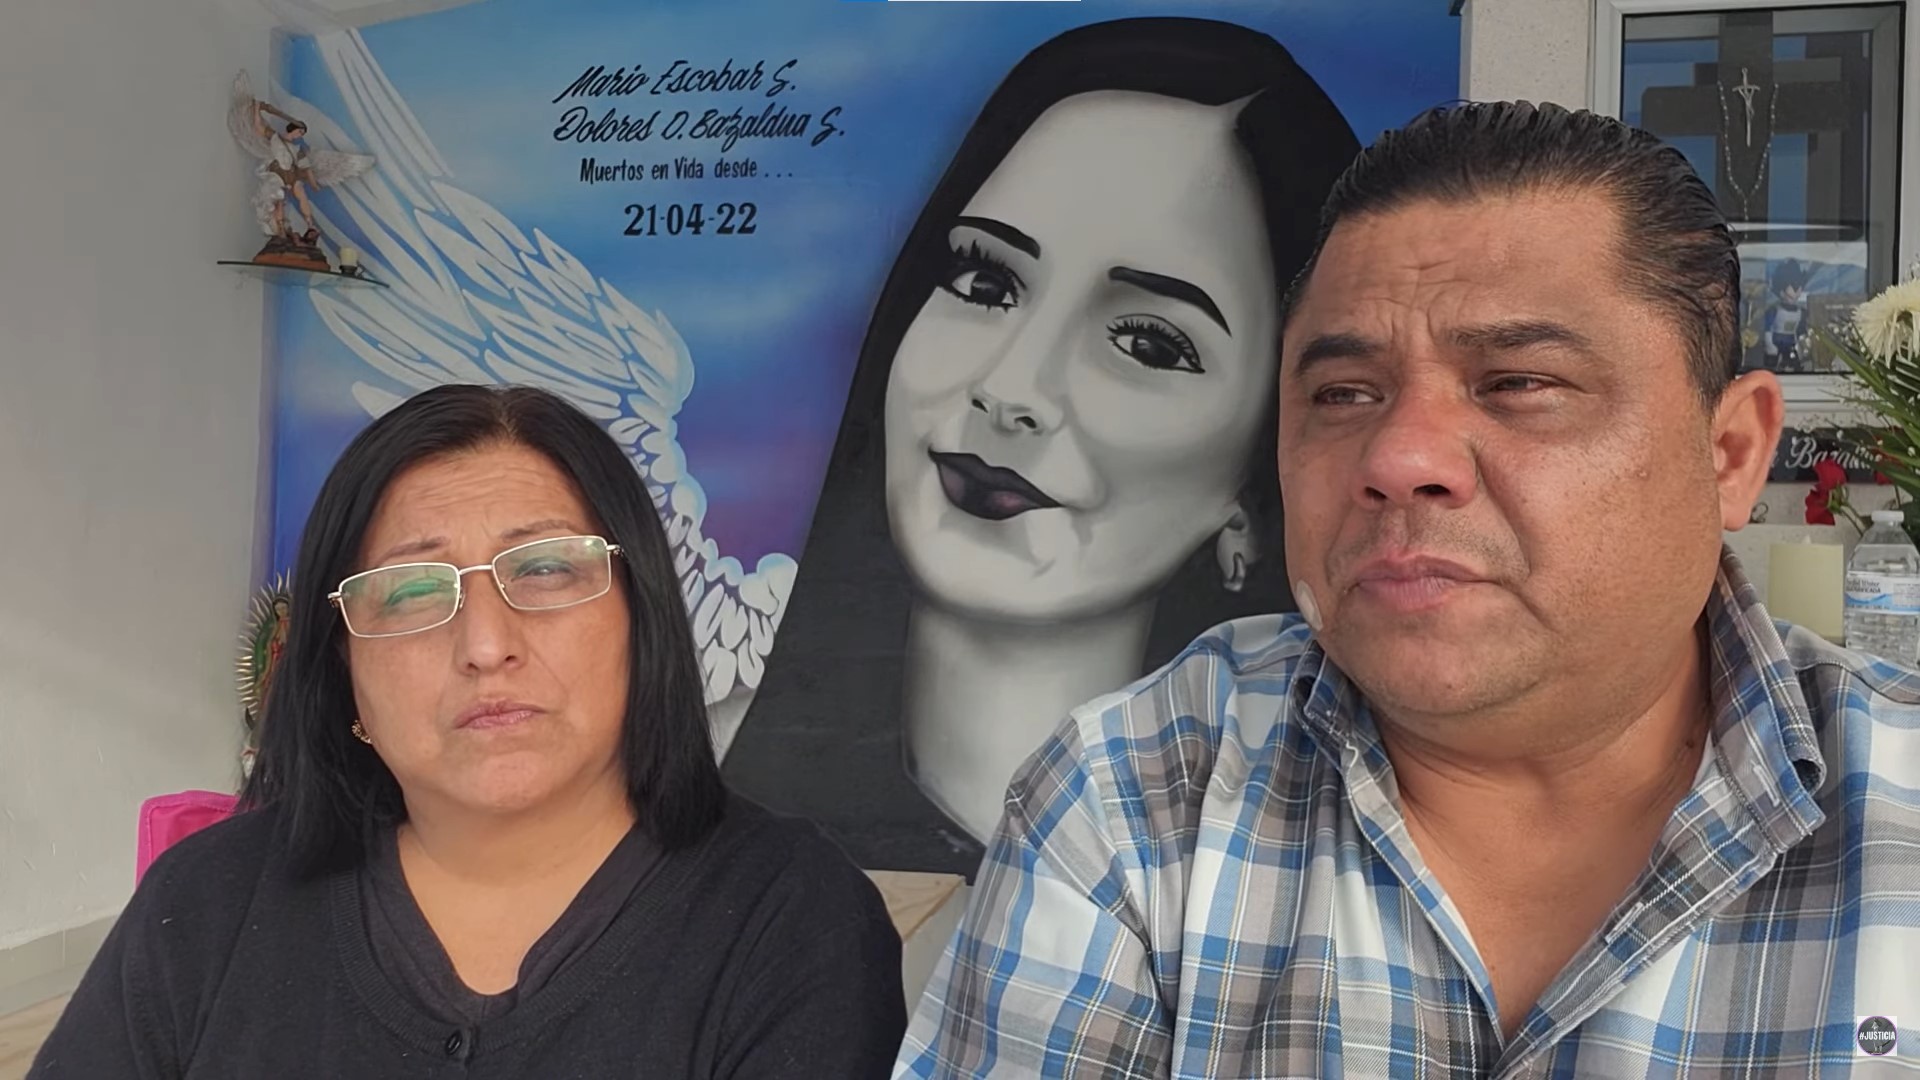 Parents of Debanhi Escobar.  Image: @marioescobarsalazar.Oficial